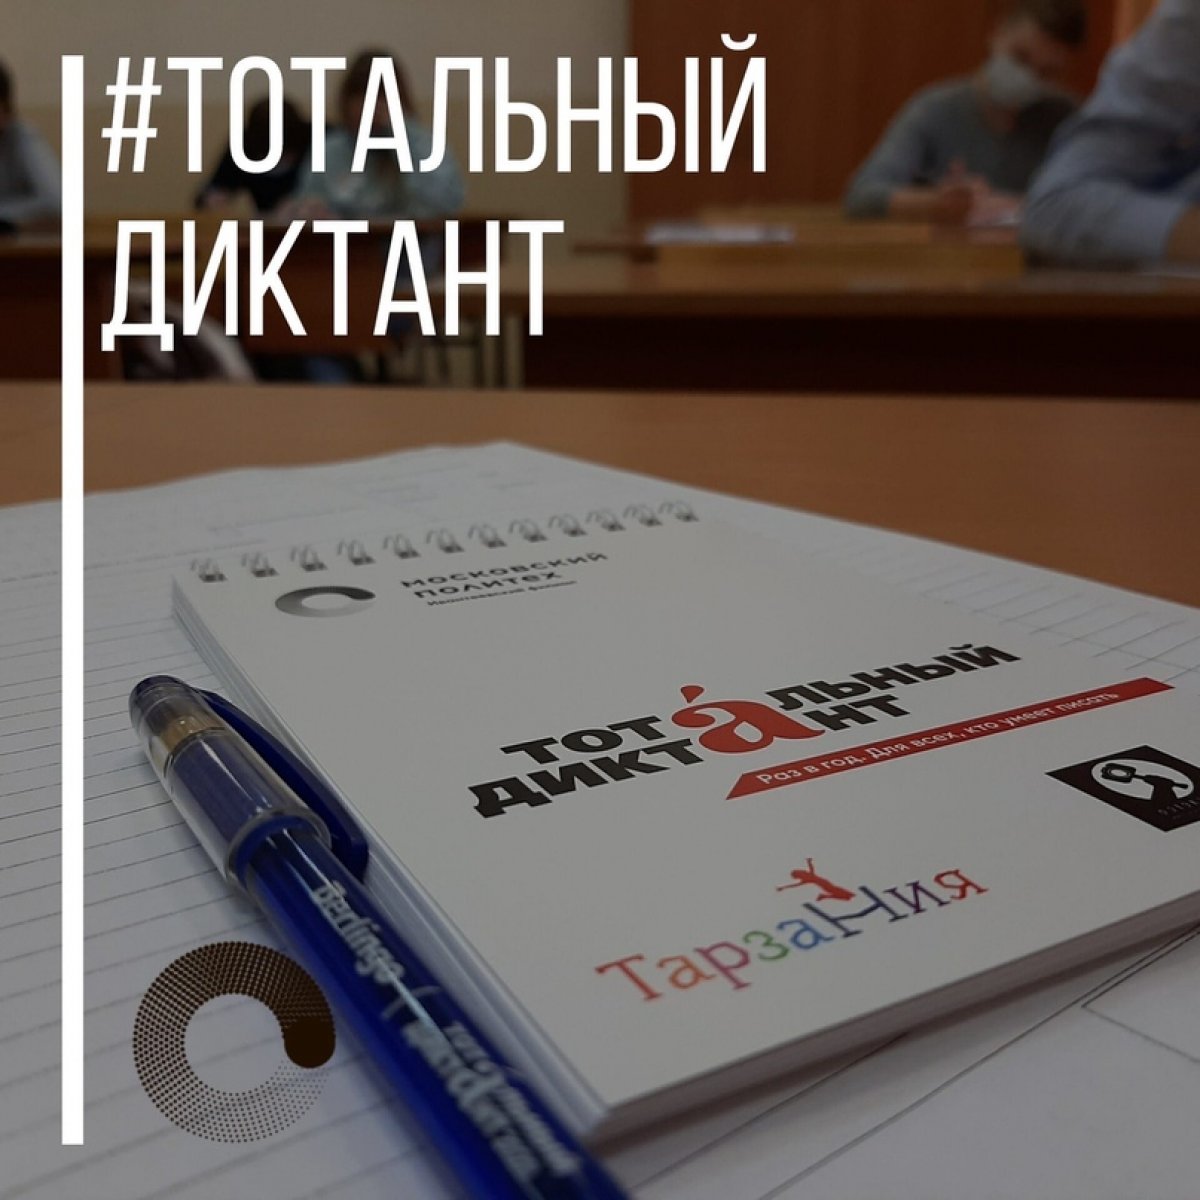 В 2020 году Ивантеевский филиал Московского политехнического университета стал офлайн-площадкой Акции «Тотальный диктант».